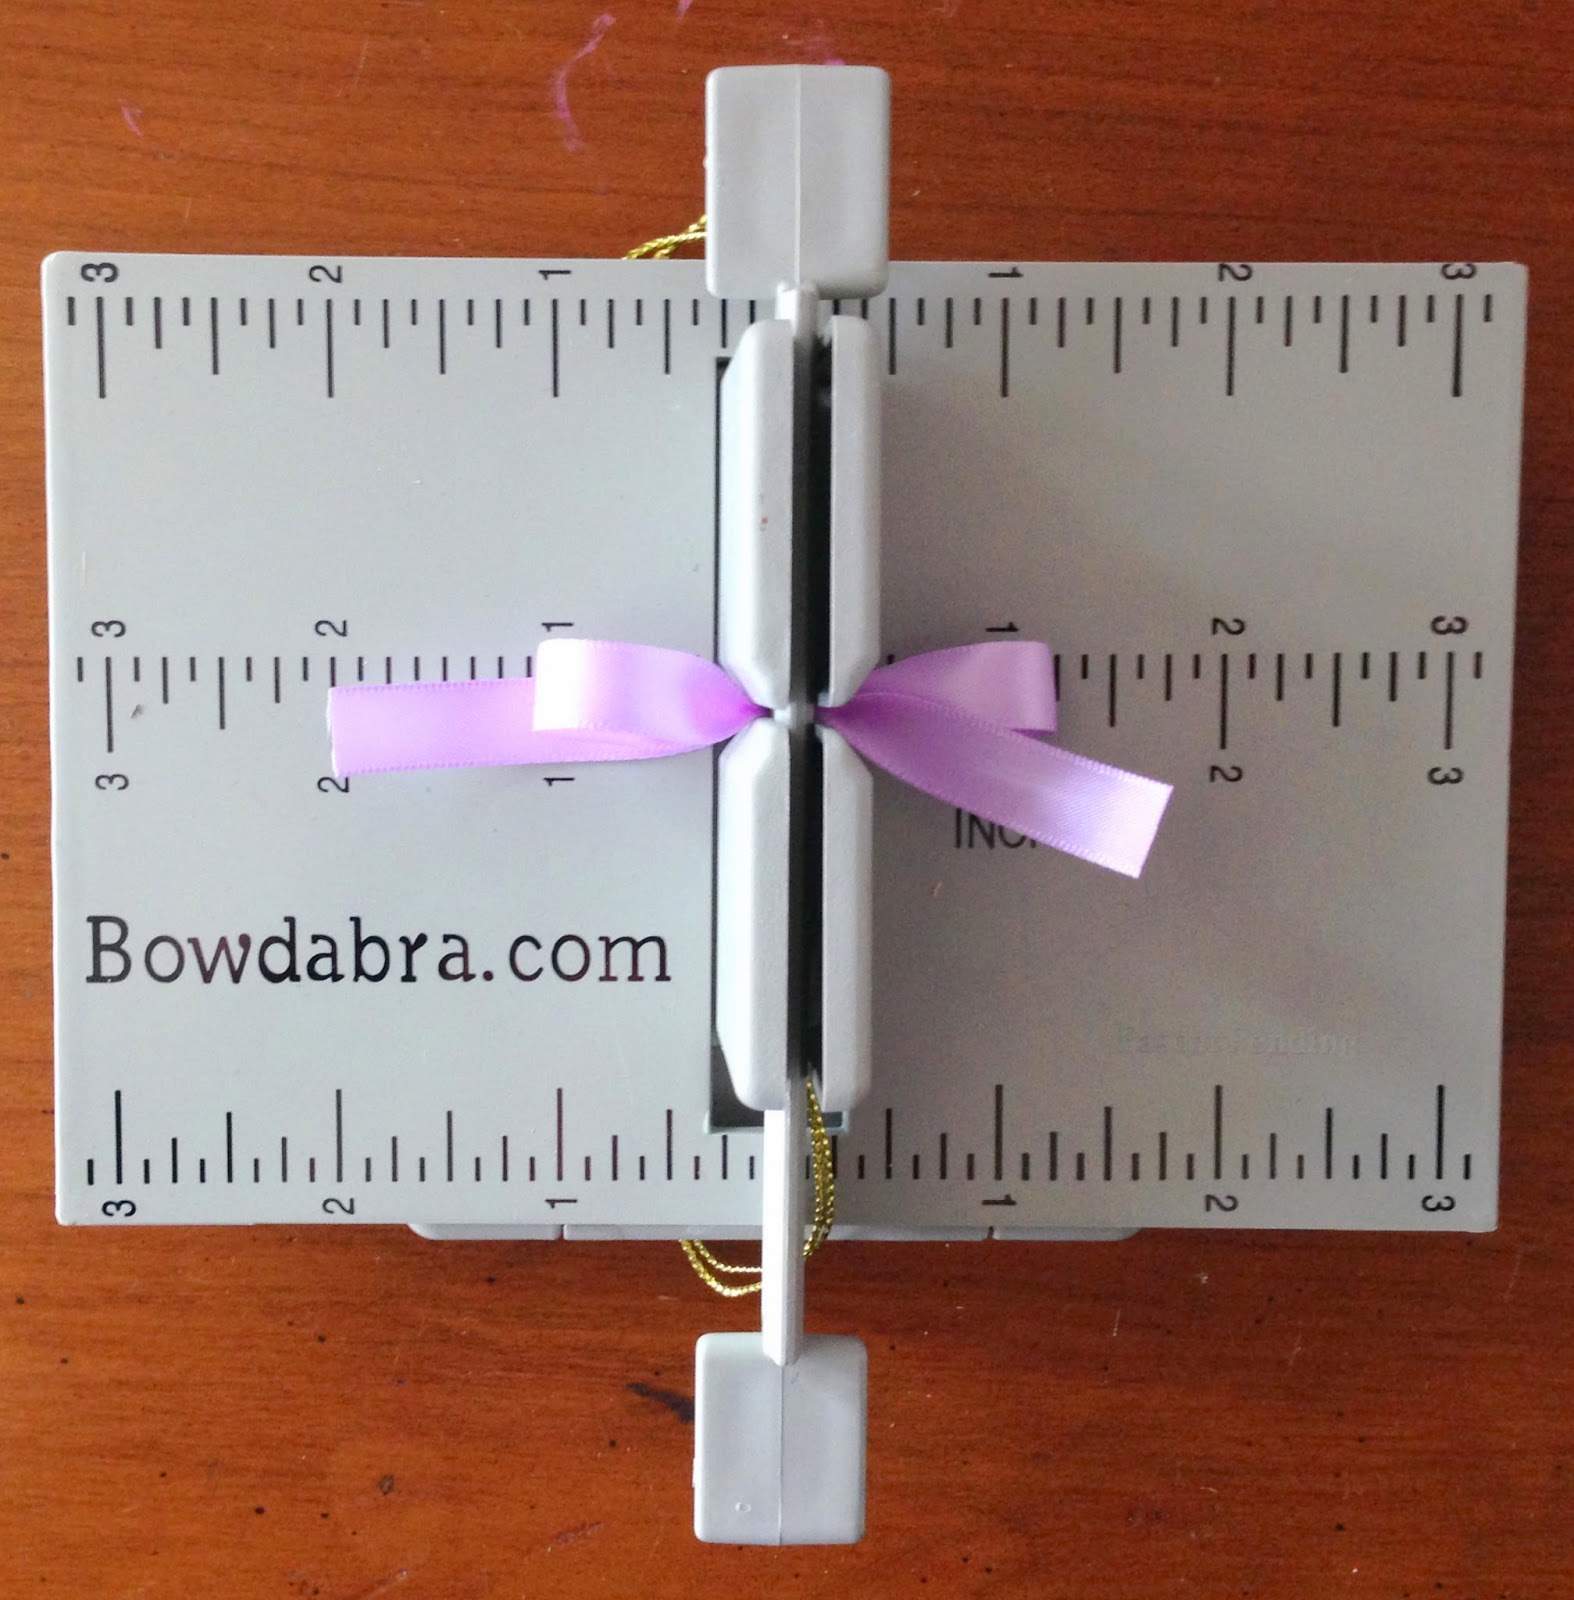  Mini Bowdabra